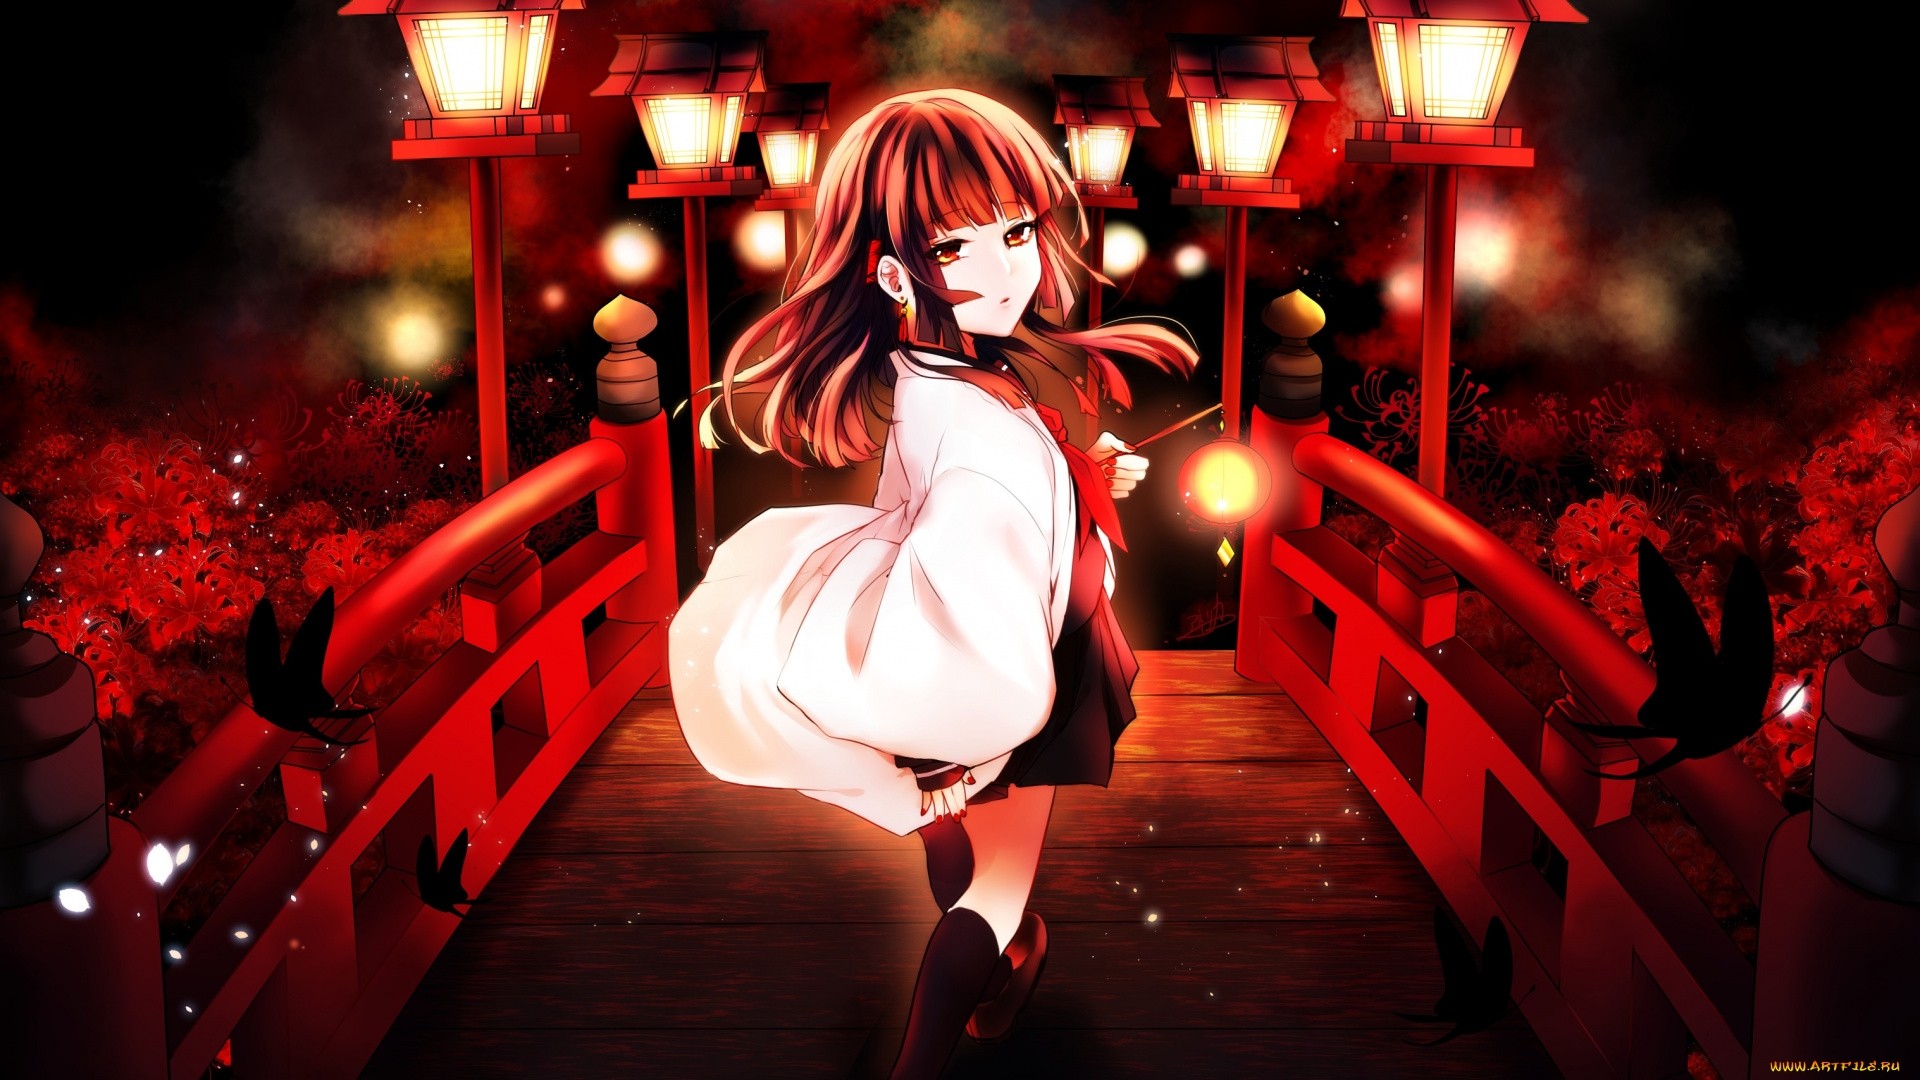 Night Anime Girl Wallpaper